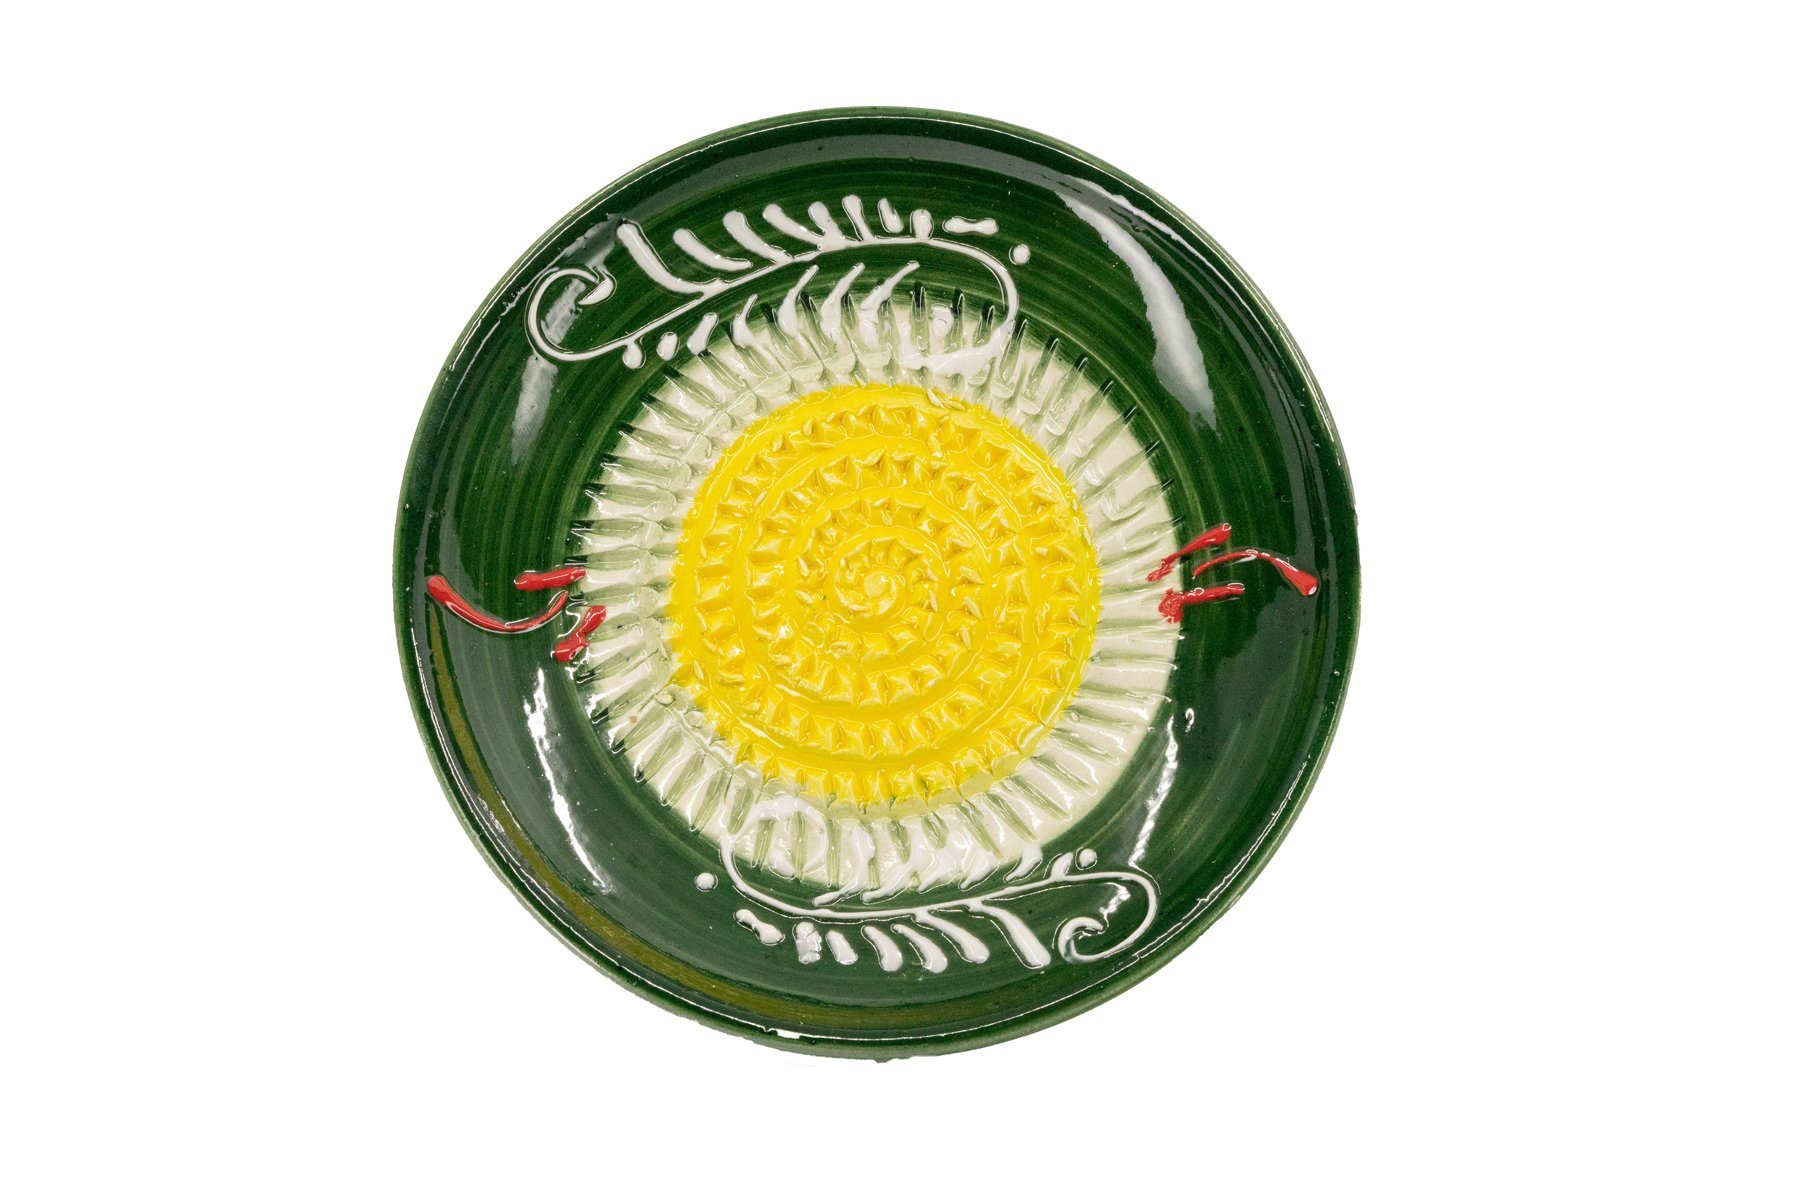 Kaladia Multireibe 12cm Reibeteller in grün & gelb, Keramik, handbemalte Küchenreibe - Made in Spain